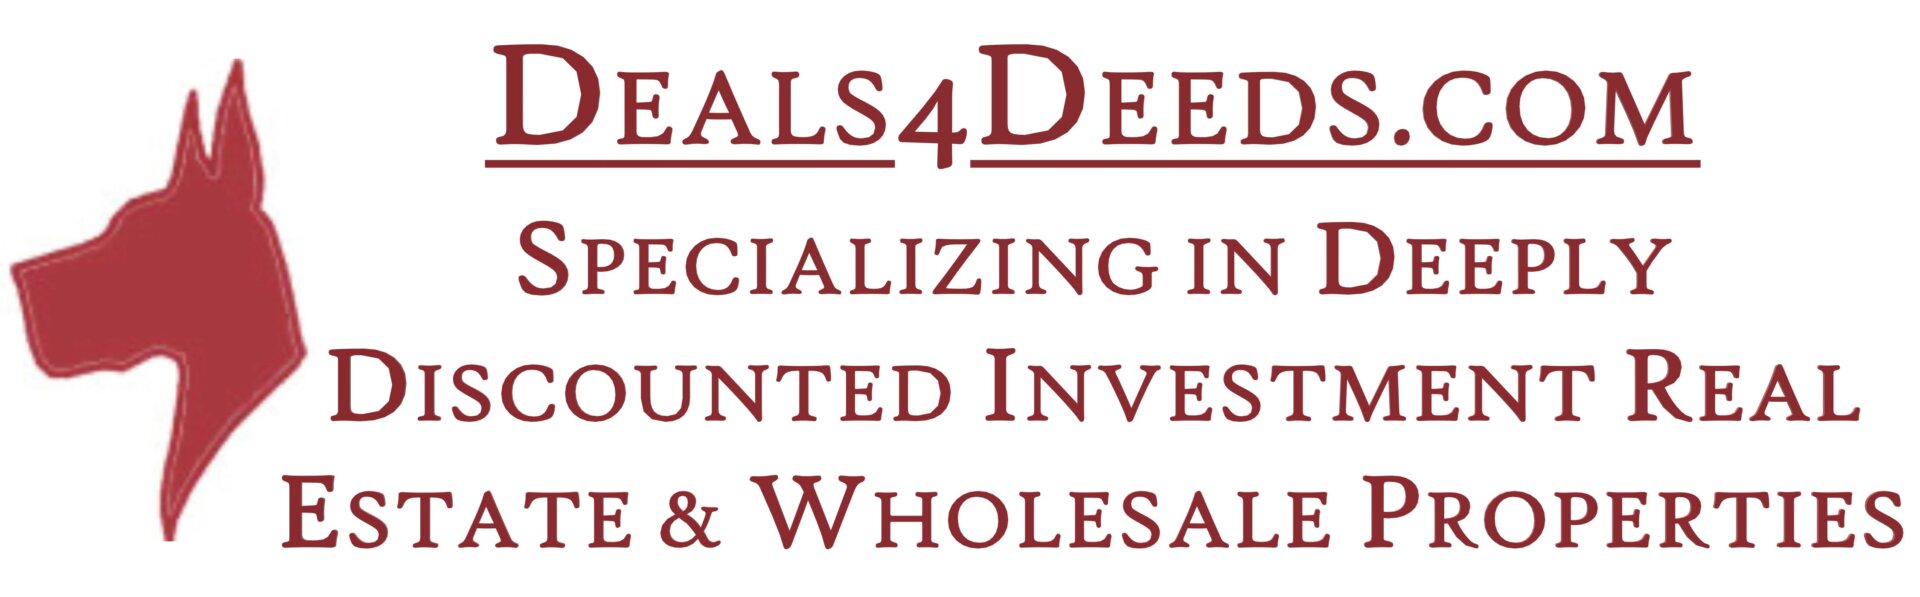 Deals4Deeds.com logo